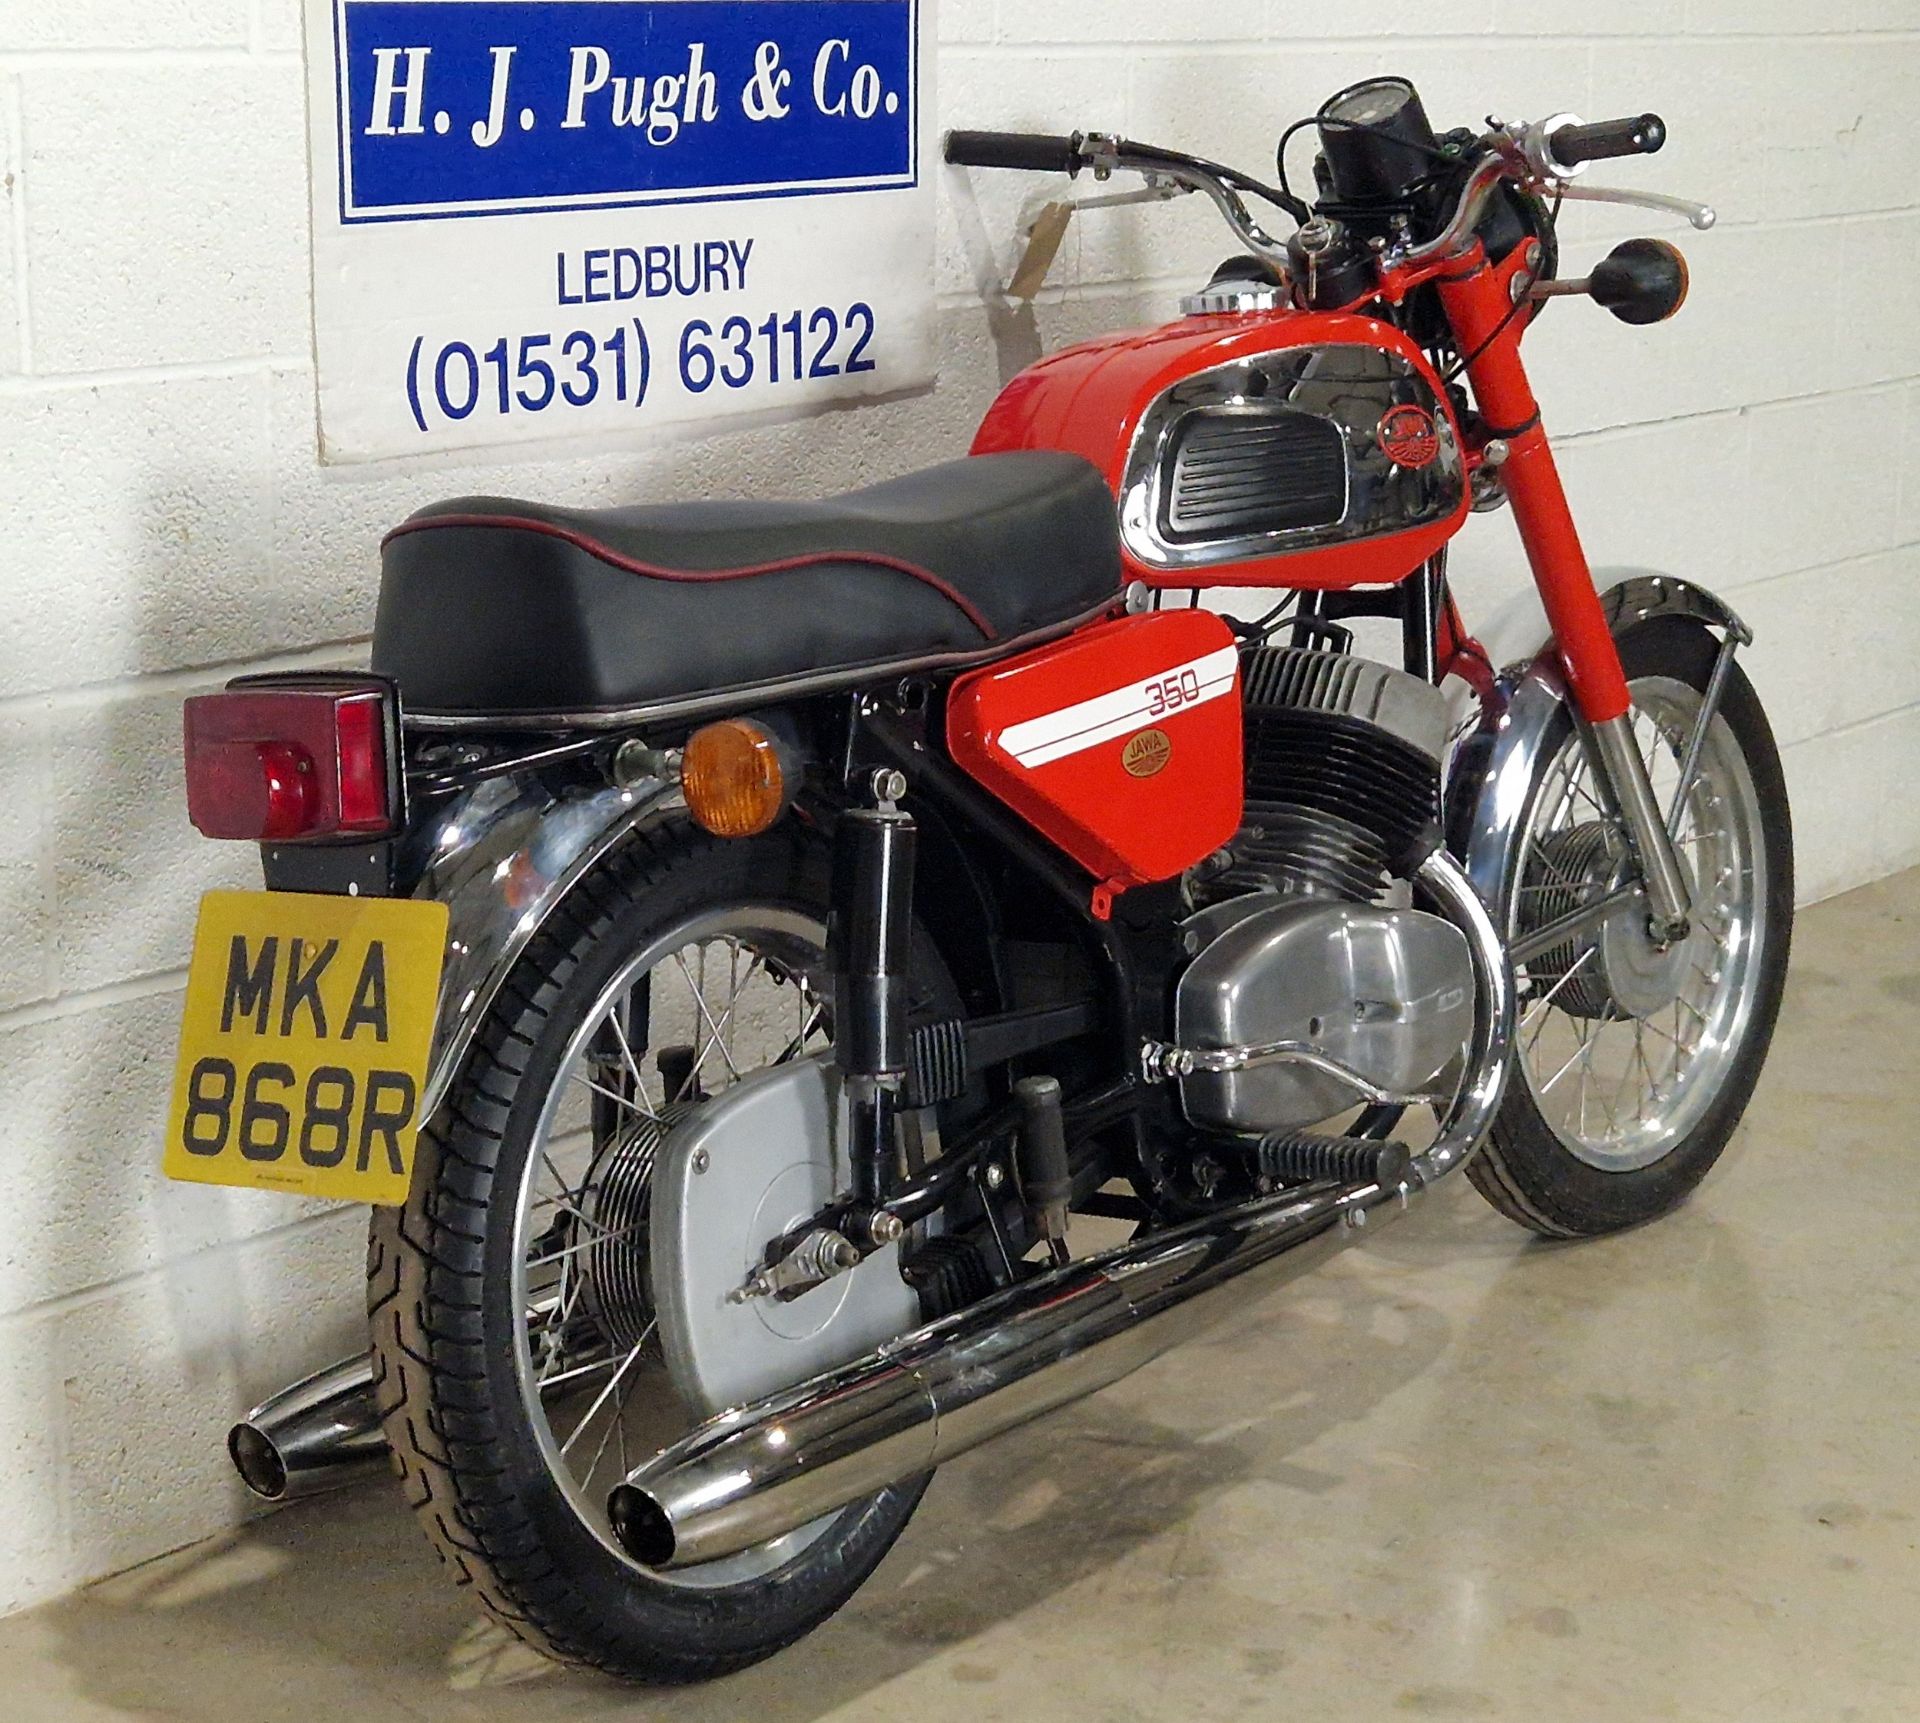 Jawa 350 motorcycle. 1977. 350cc Frame No. 144399 Engine No. 001559 Runs and rides. Reg. MKA 868R. - Image 3 of 6